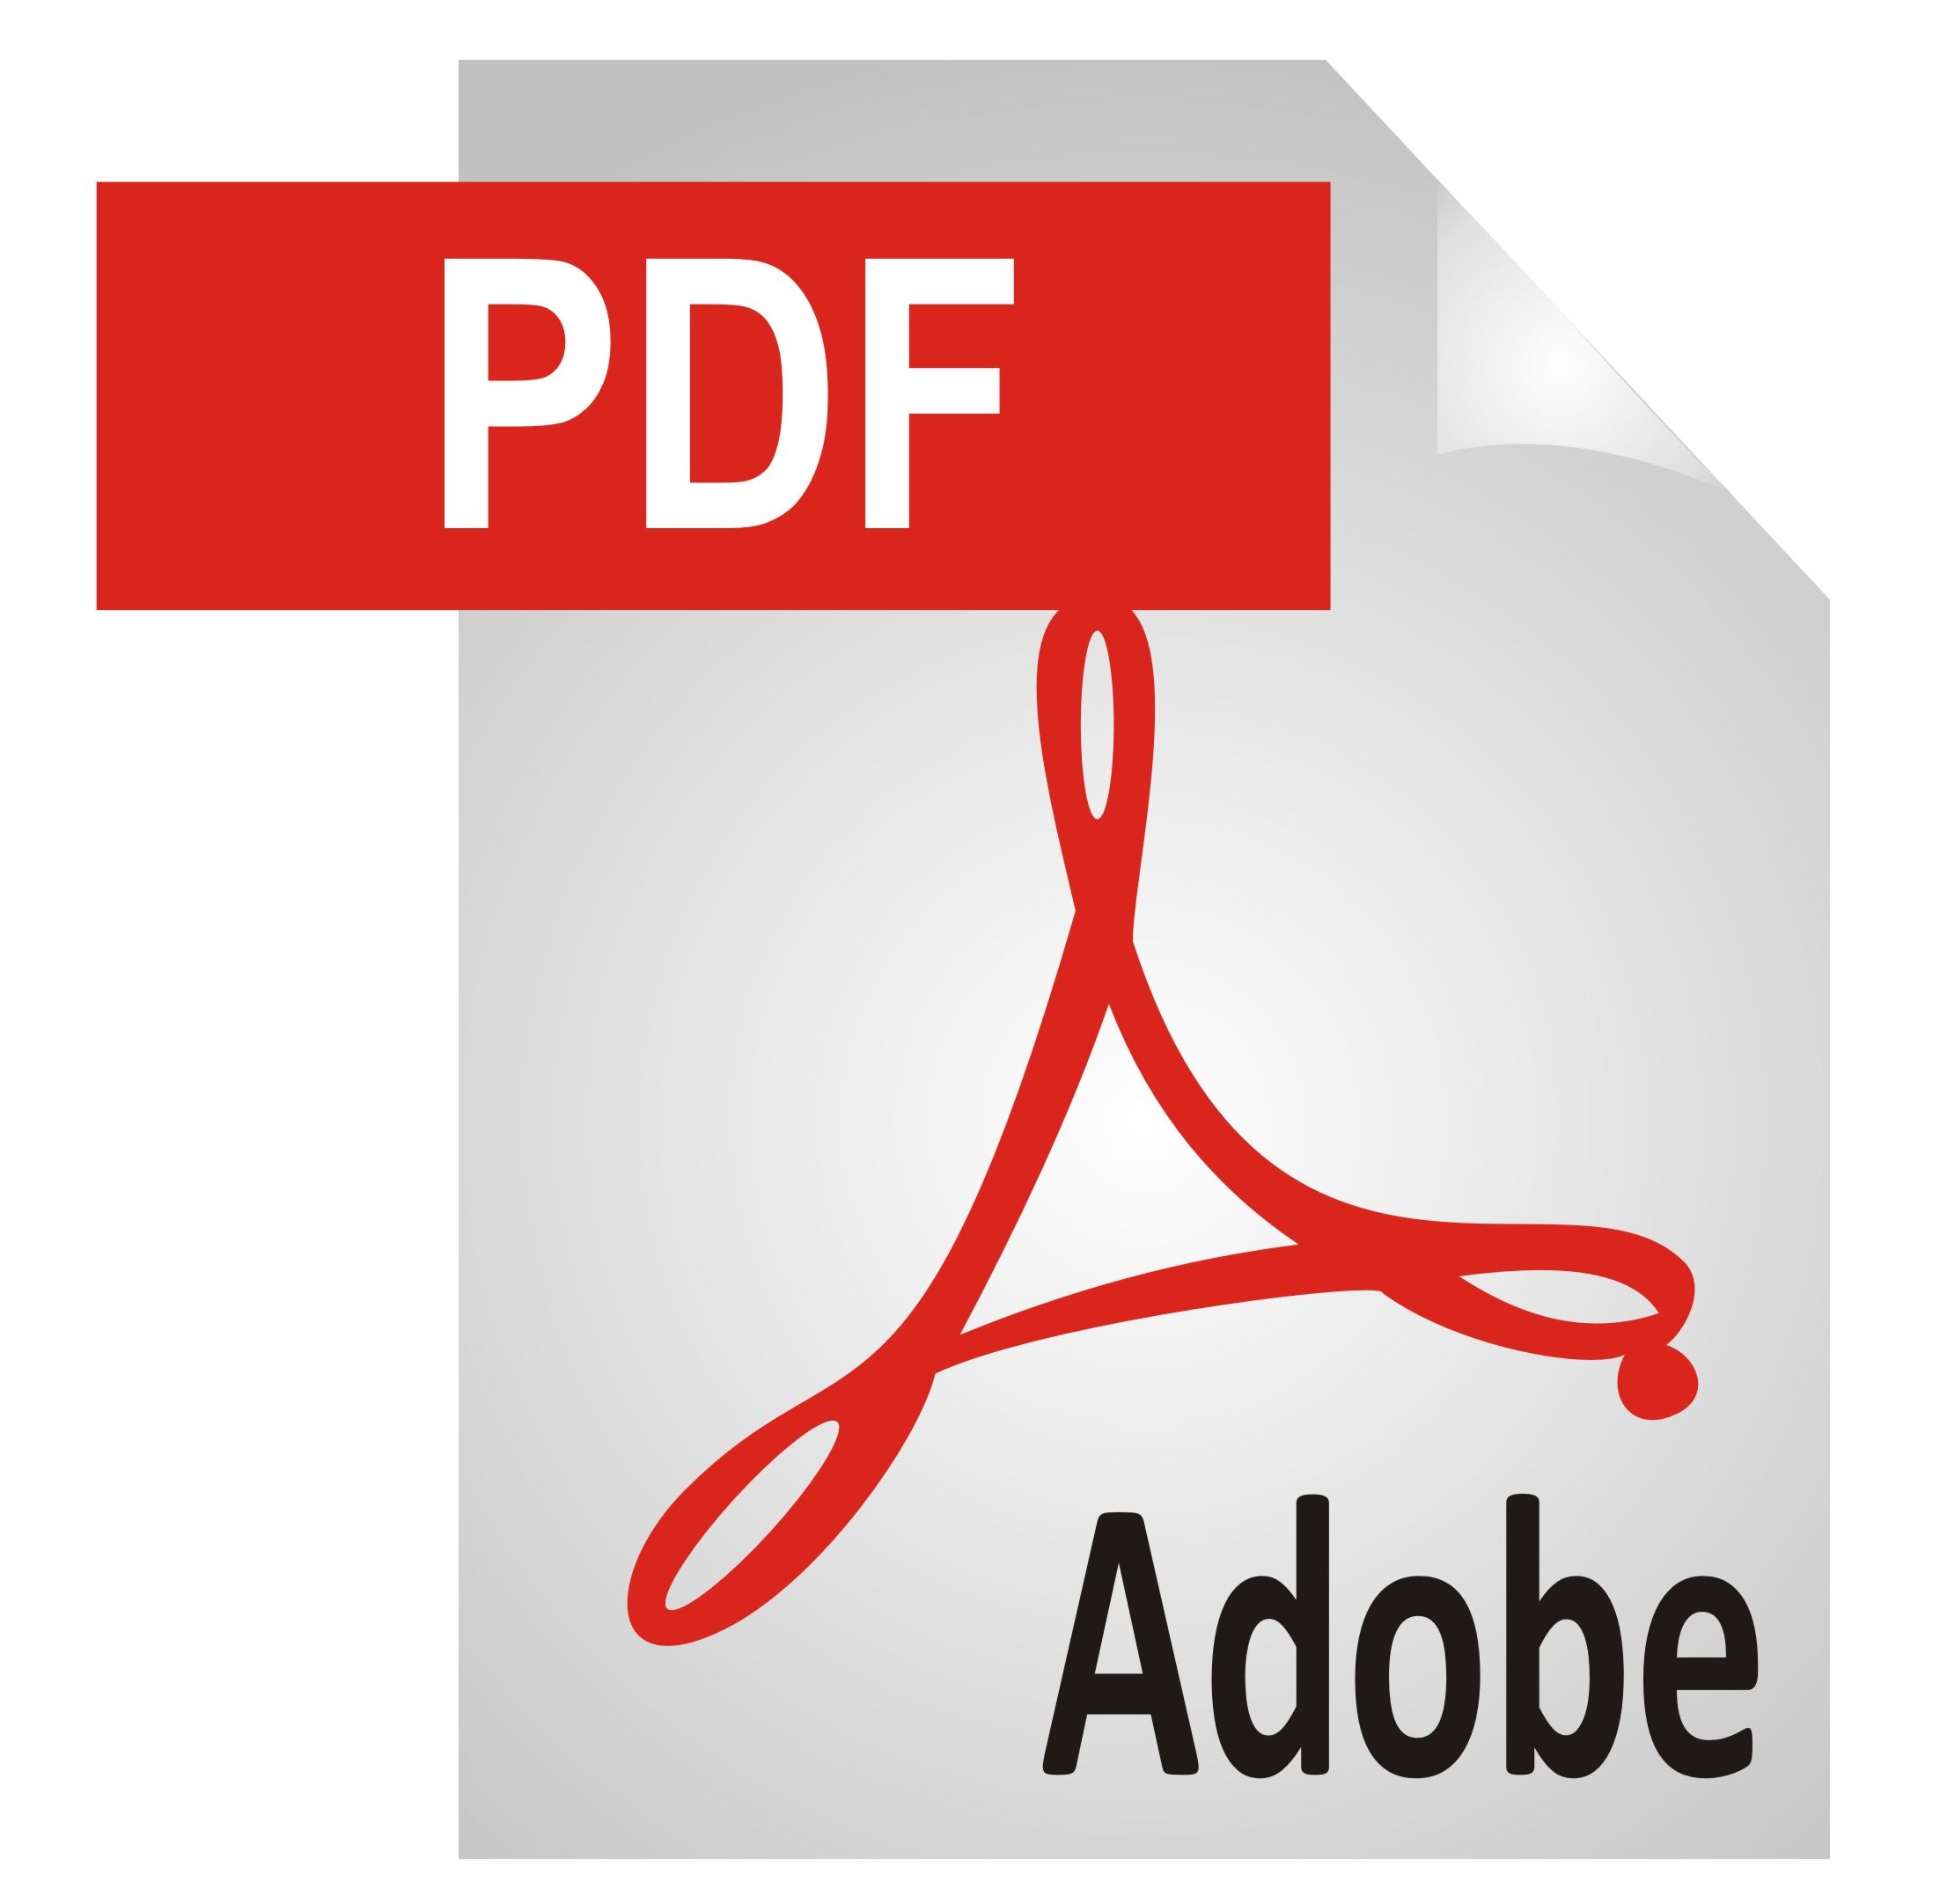 Pdf file format symbol Icons | Free Download